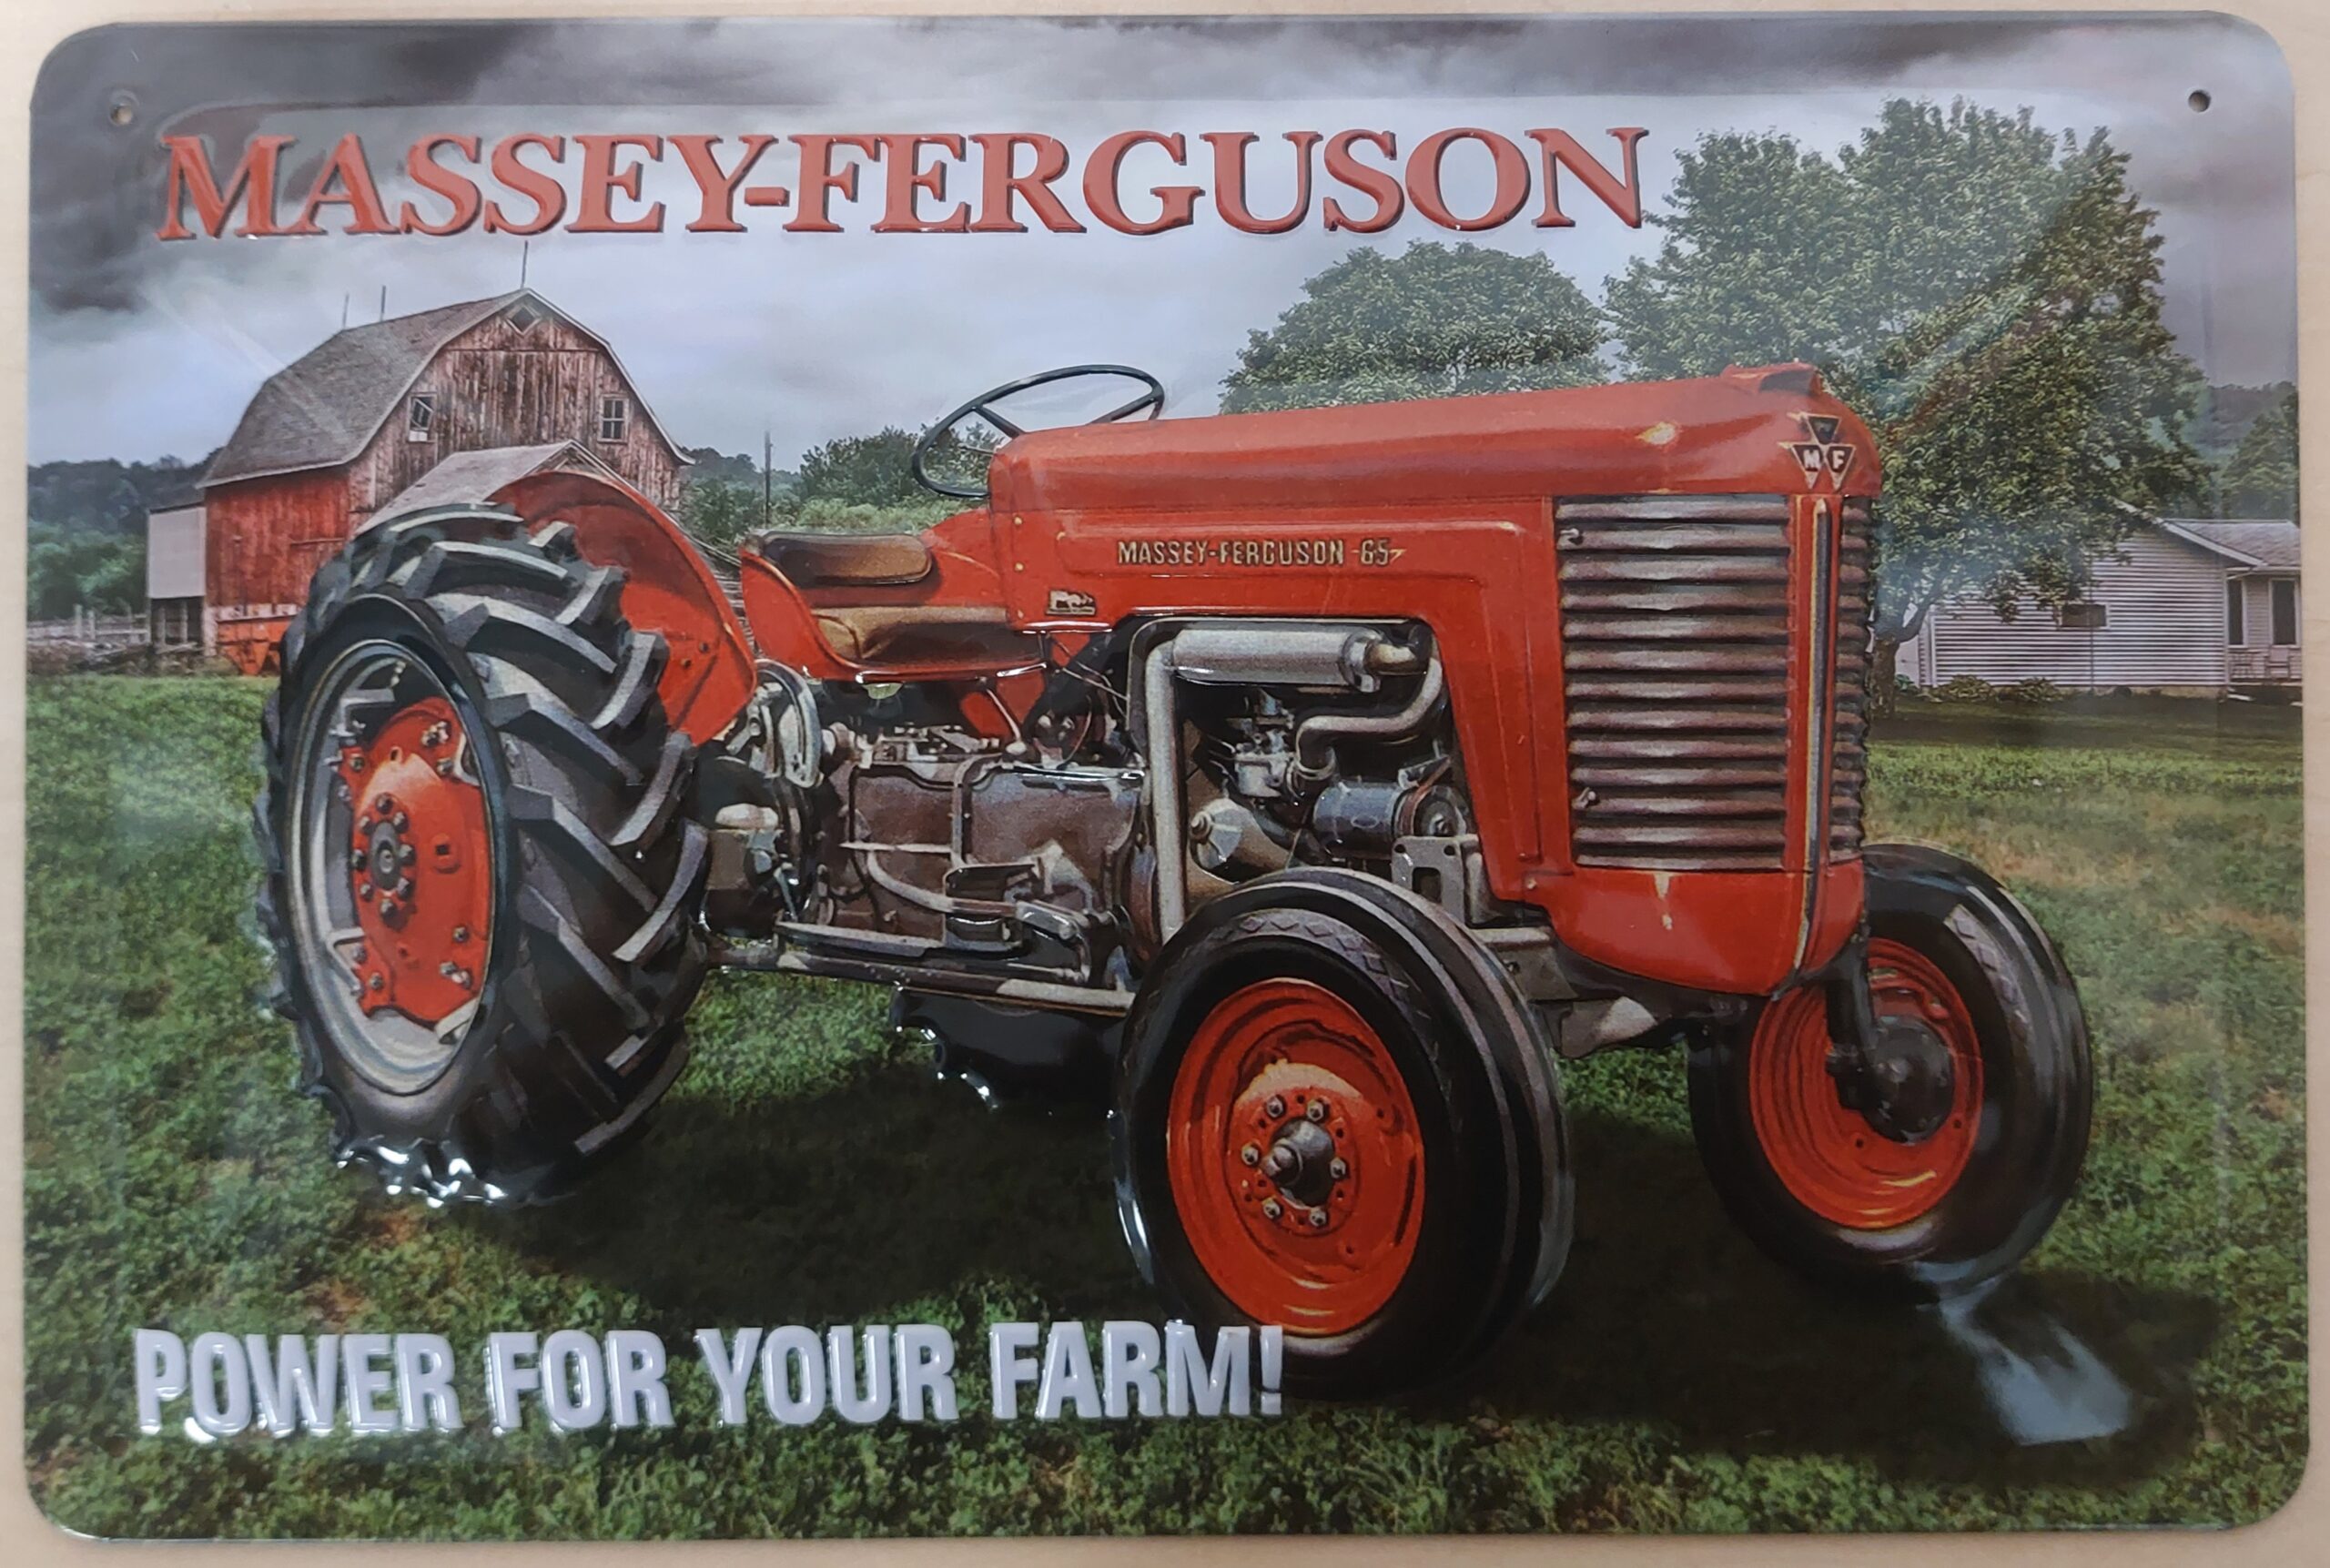 Massey Ferguson 65 tractor power your farm metalen reclamebord relief